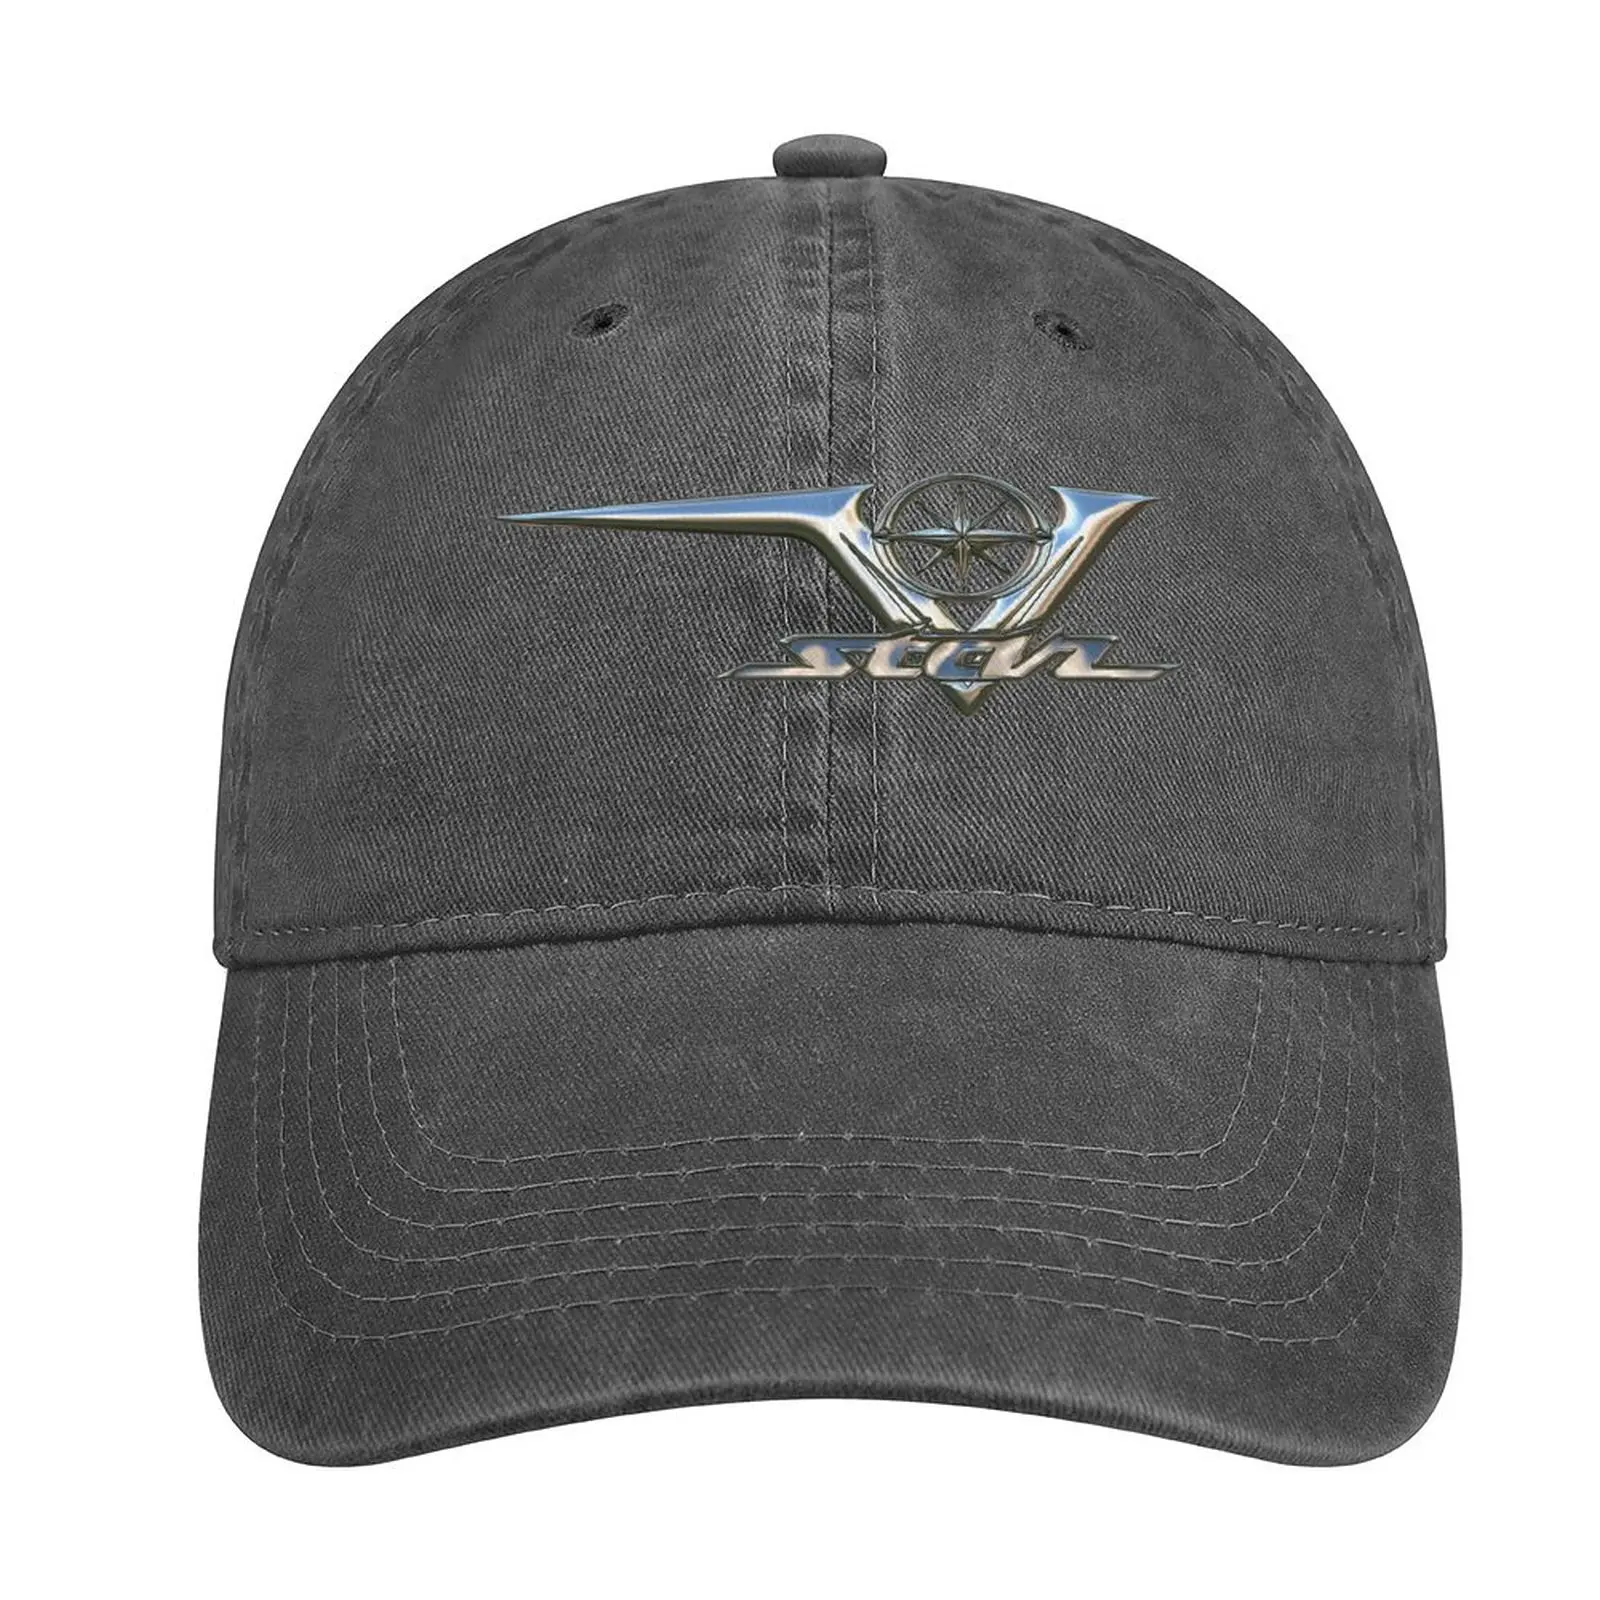 Звезда V 250, 650, 950, 1100, 1300, 1900 Логотип 3 Хром 2 Ковбойская шляпа чайные шляпы милая шляпа для девочек Мужская